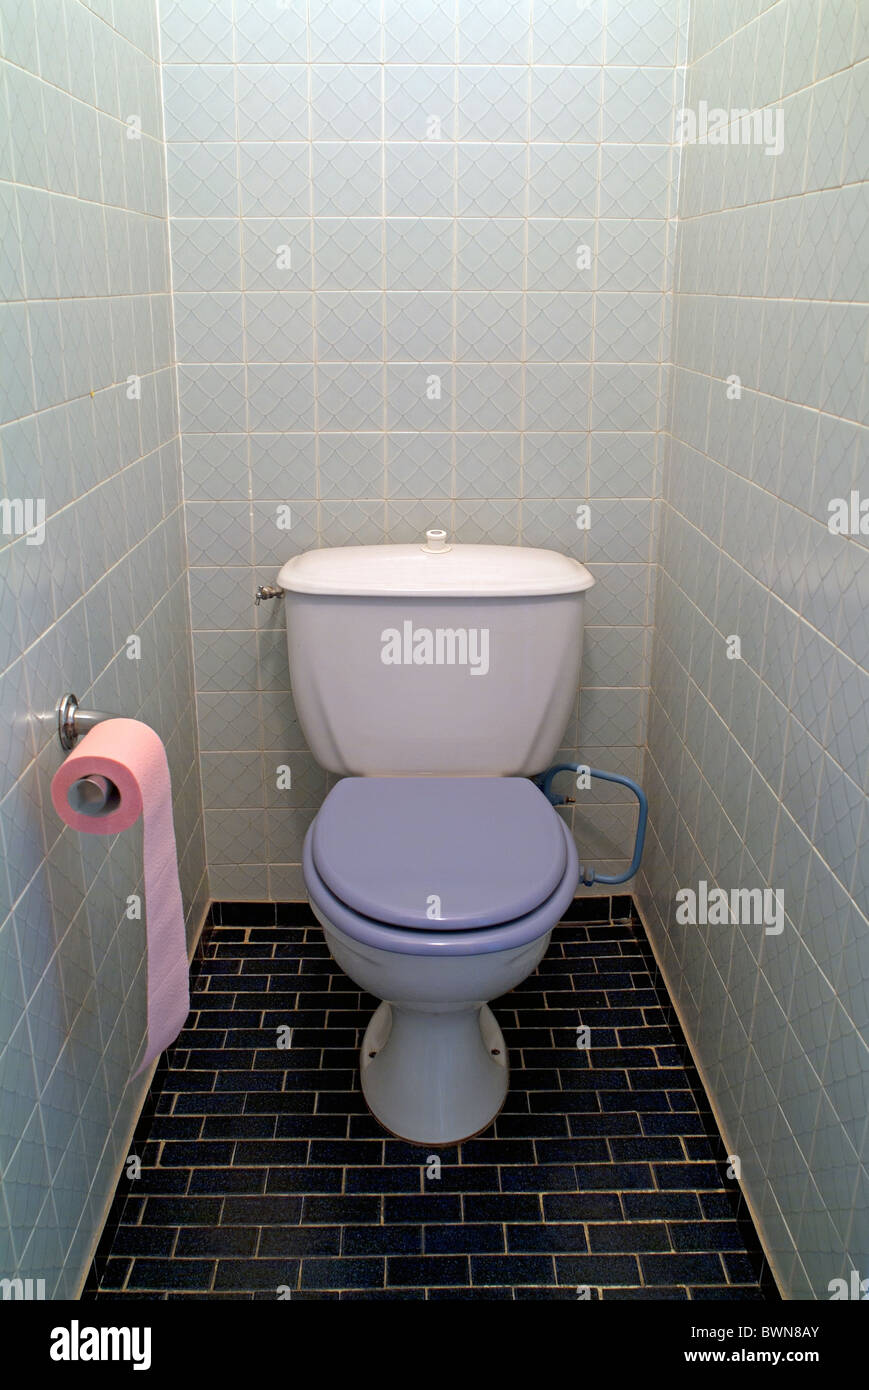 Toilet / restroom Stock Photo